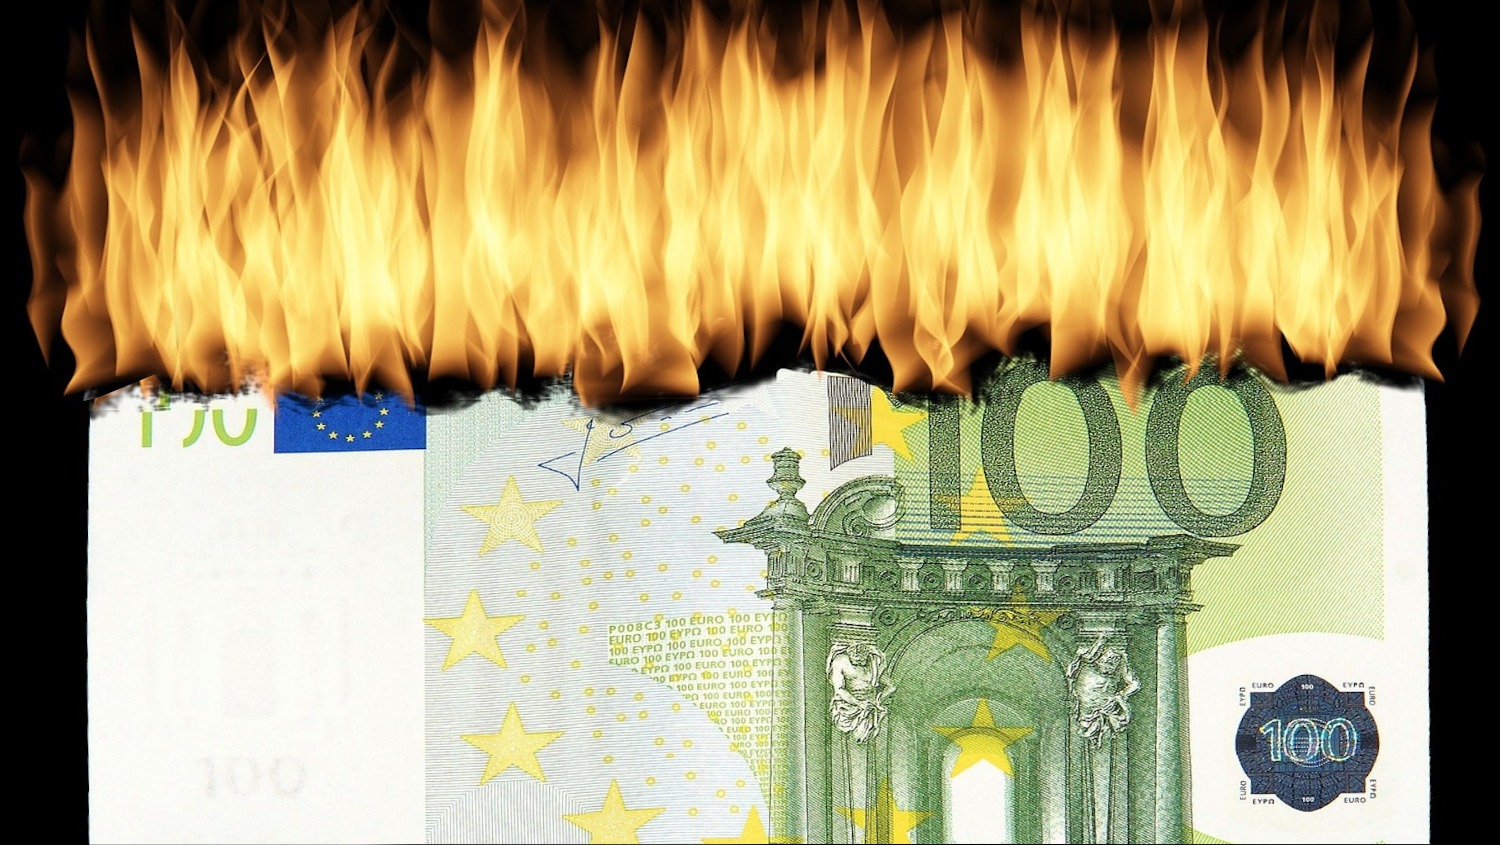 270 Mio. Euro: Diese sinnlosen Ausgaben der ÖVP-FPÖ-Regierung unter Kurz sorgen für Kritik